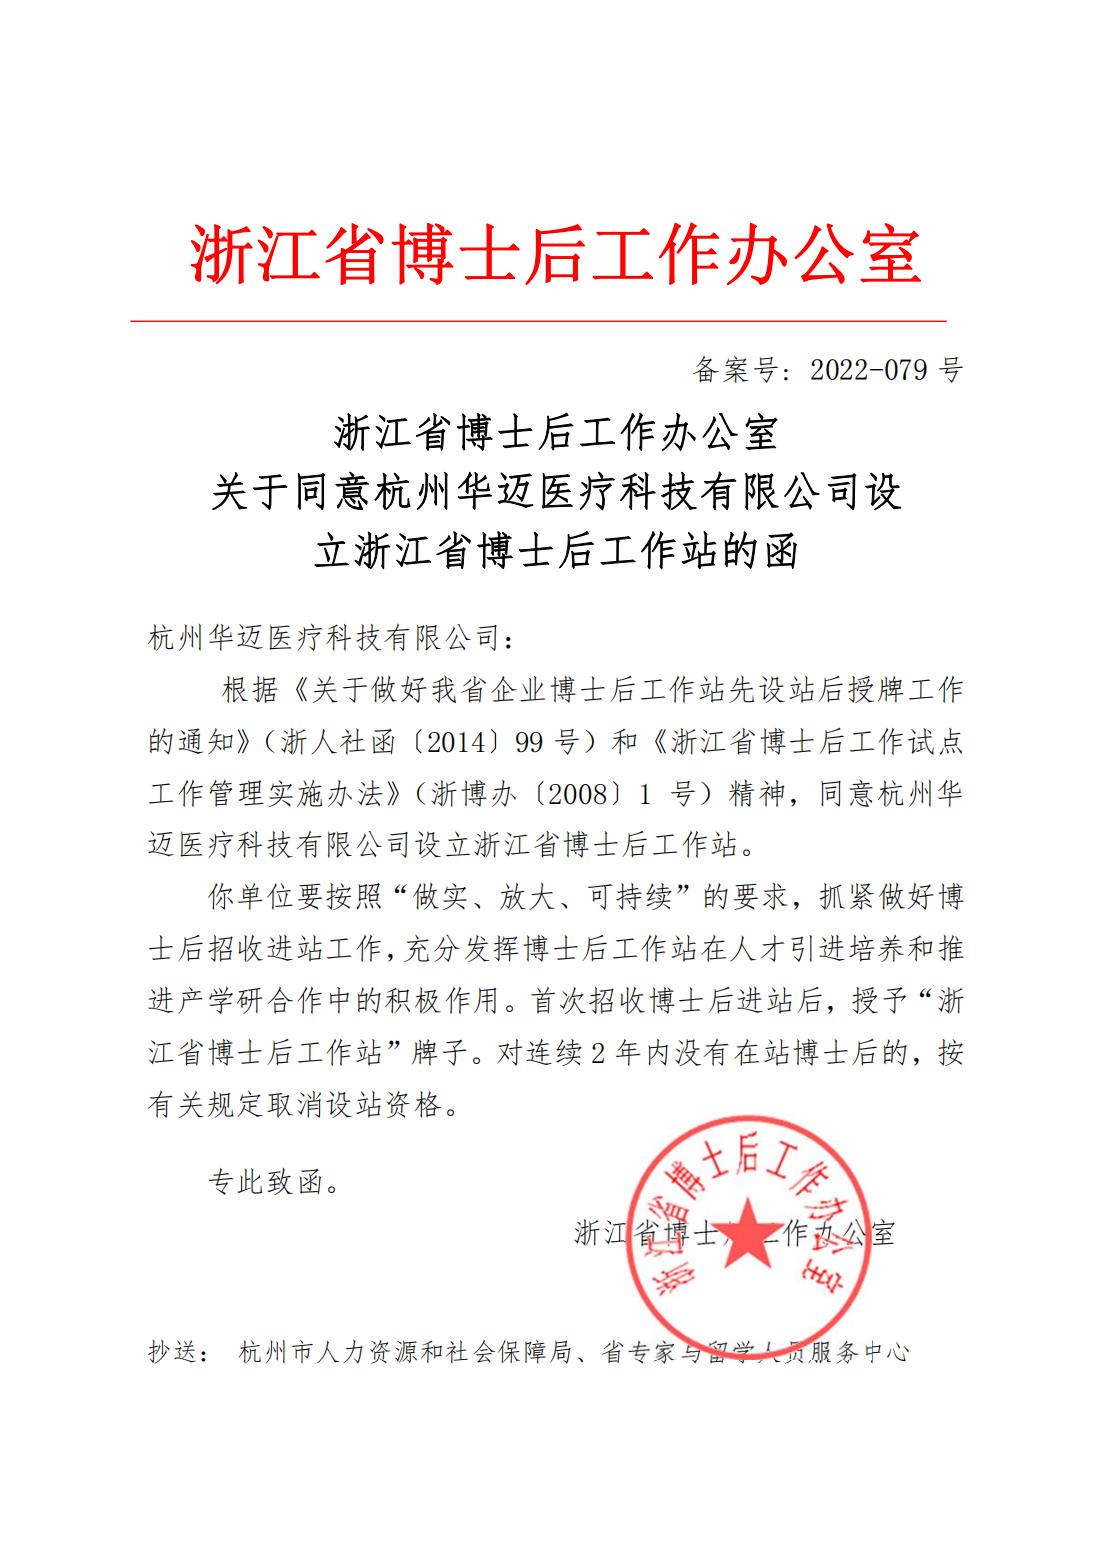 关于同意杭州华迈医疗科技有限公司设立浙江省博士后工作站的函_00.jpg